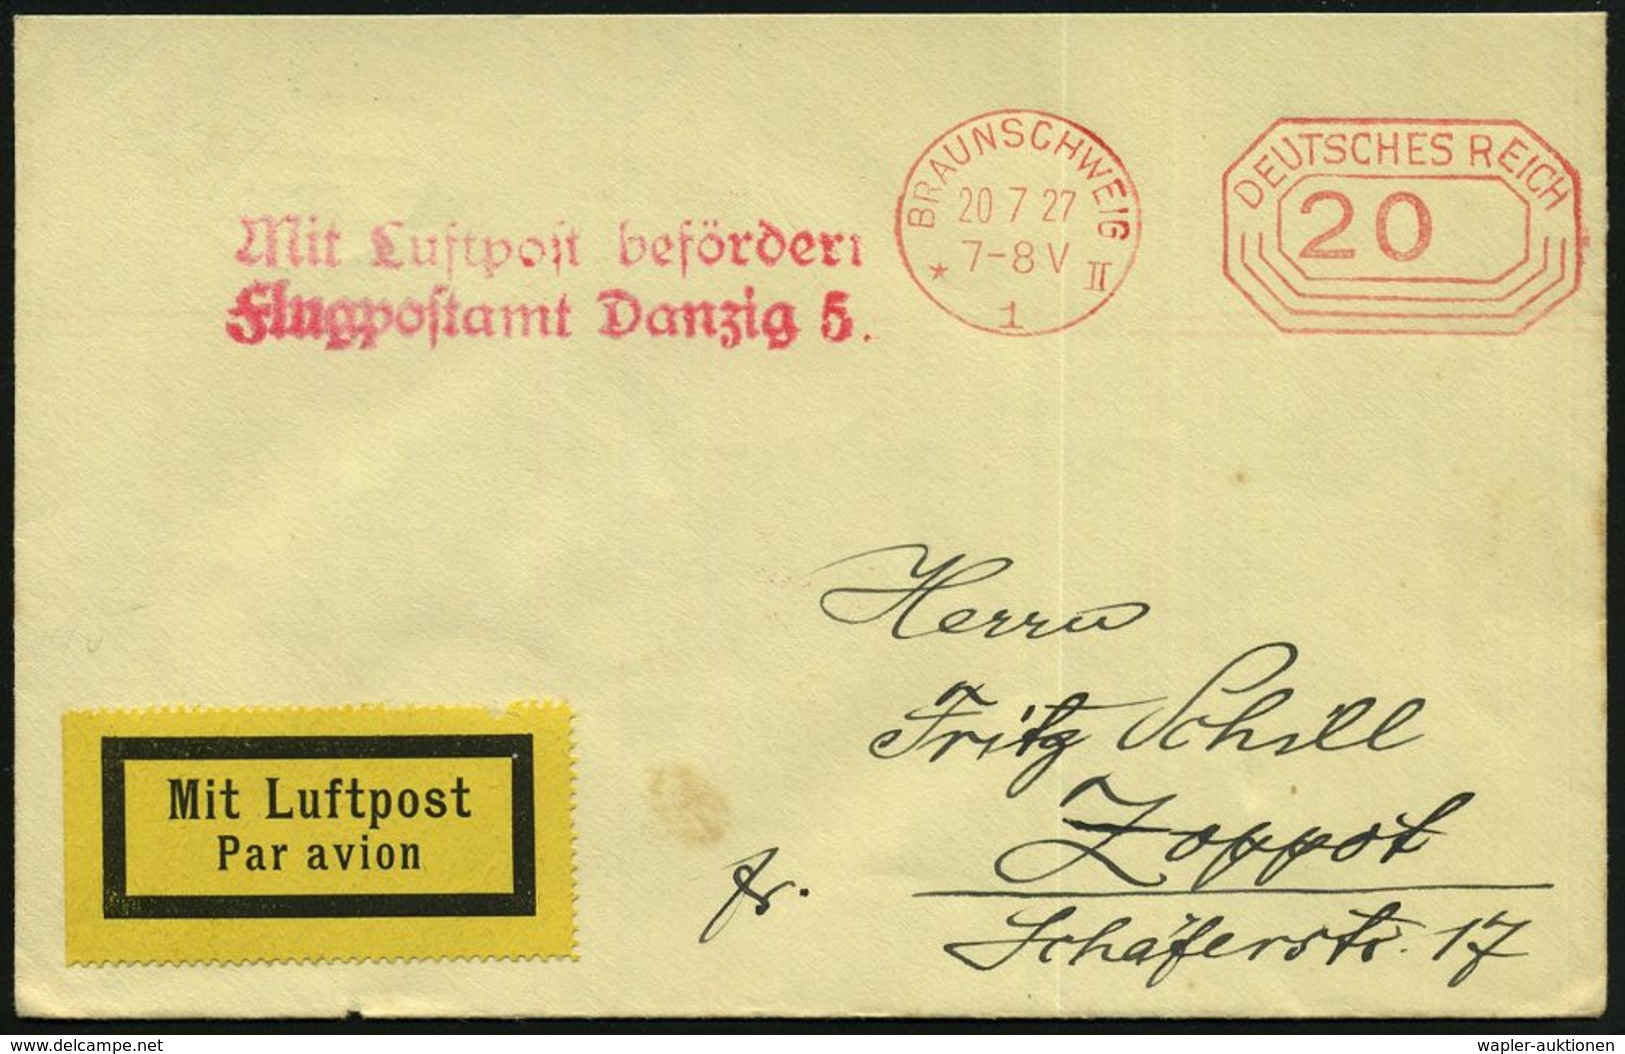 DEUTSCHE FLUGBESTÄTIGUNGSSTEMPEL : Danzig 5 1927 (20.7.) Roter 2L: Mit Luftpost Befördert/ Flugpostamt Danzig 5. (Mi.F 2 - Autres (Air)